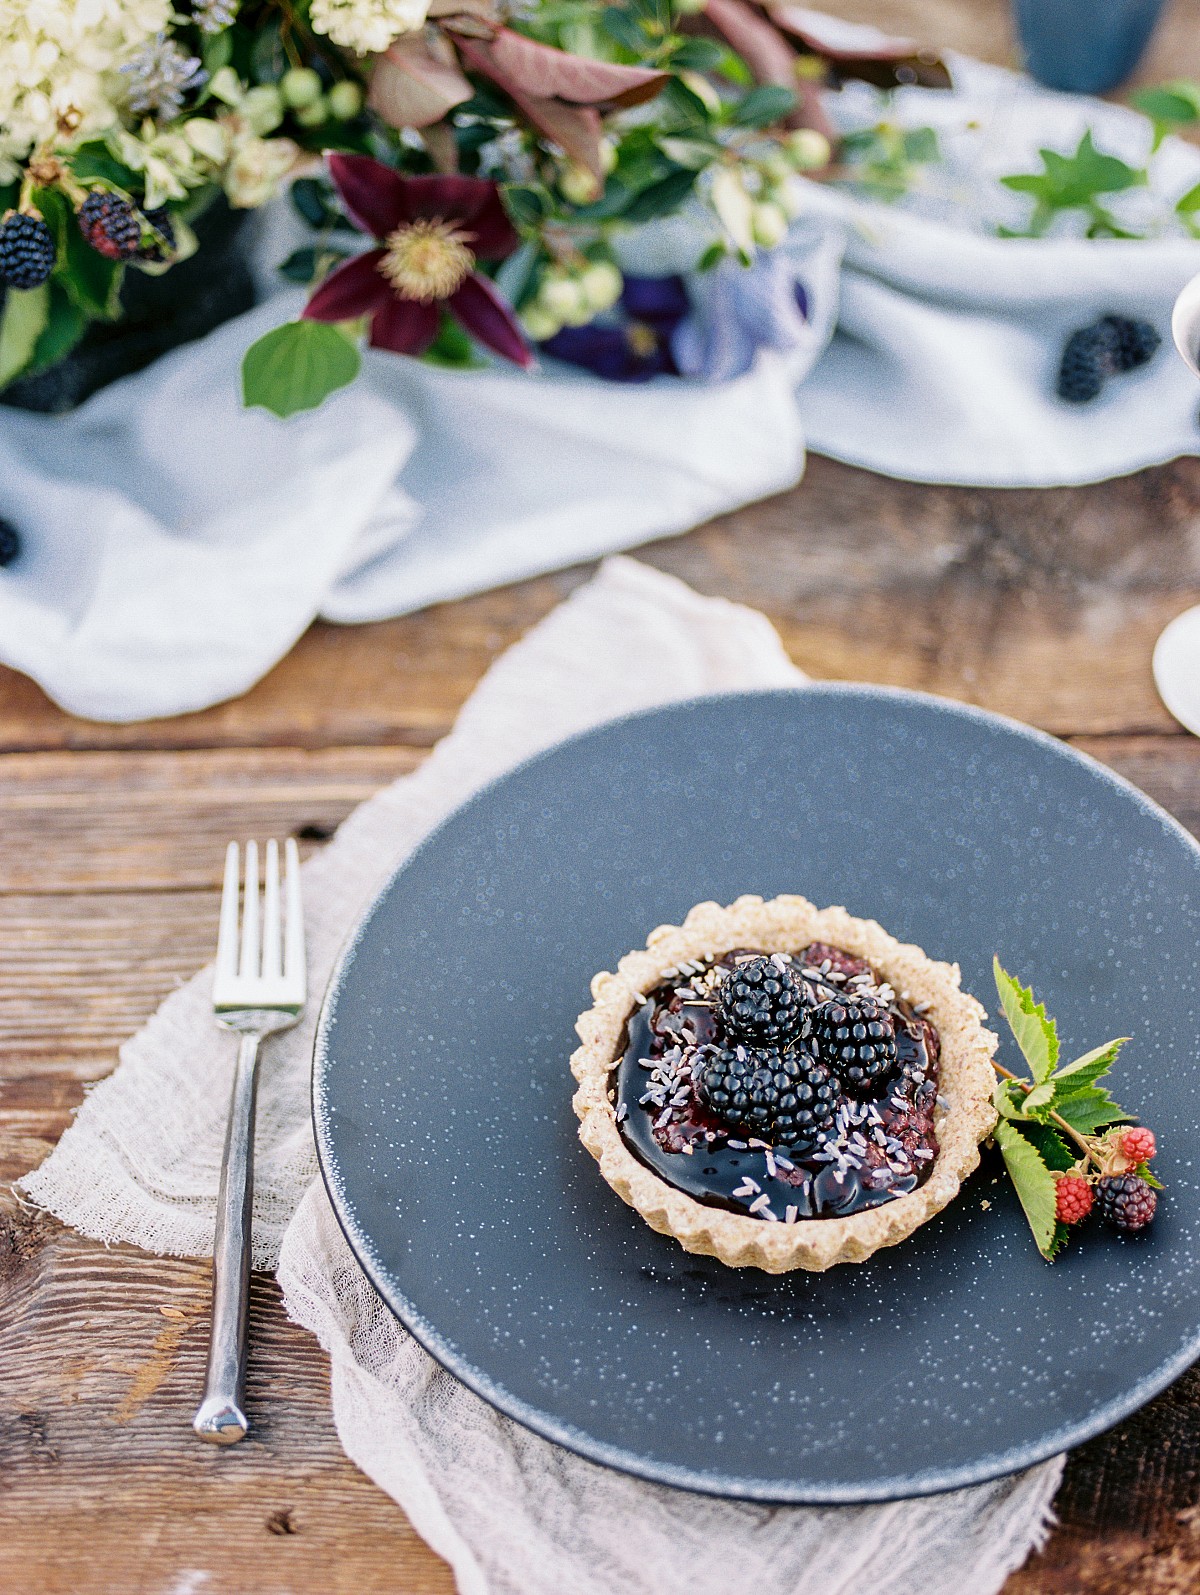 Rustic Blackberry Farm Inspired Wedding ideas